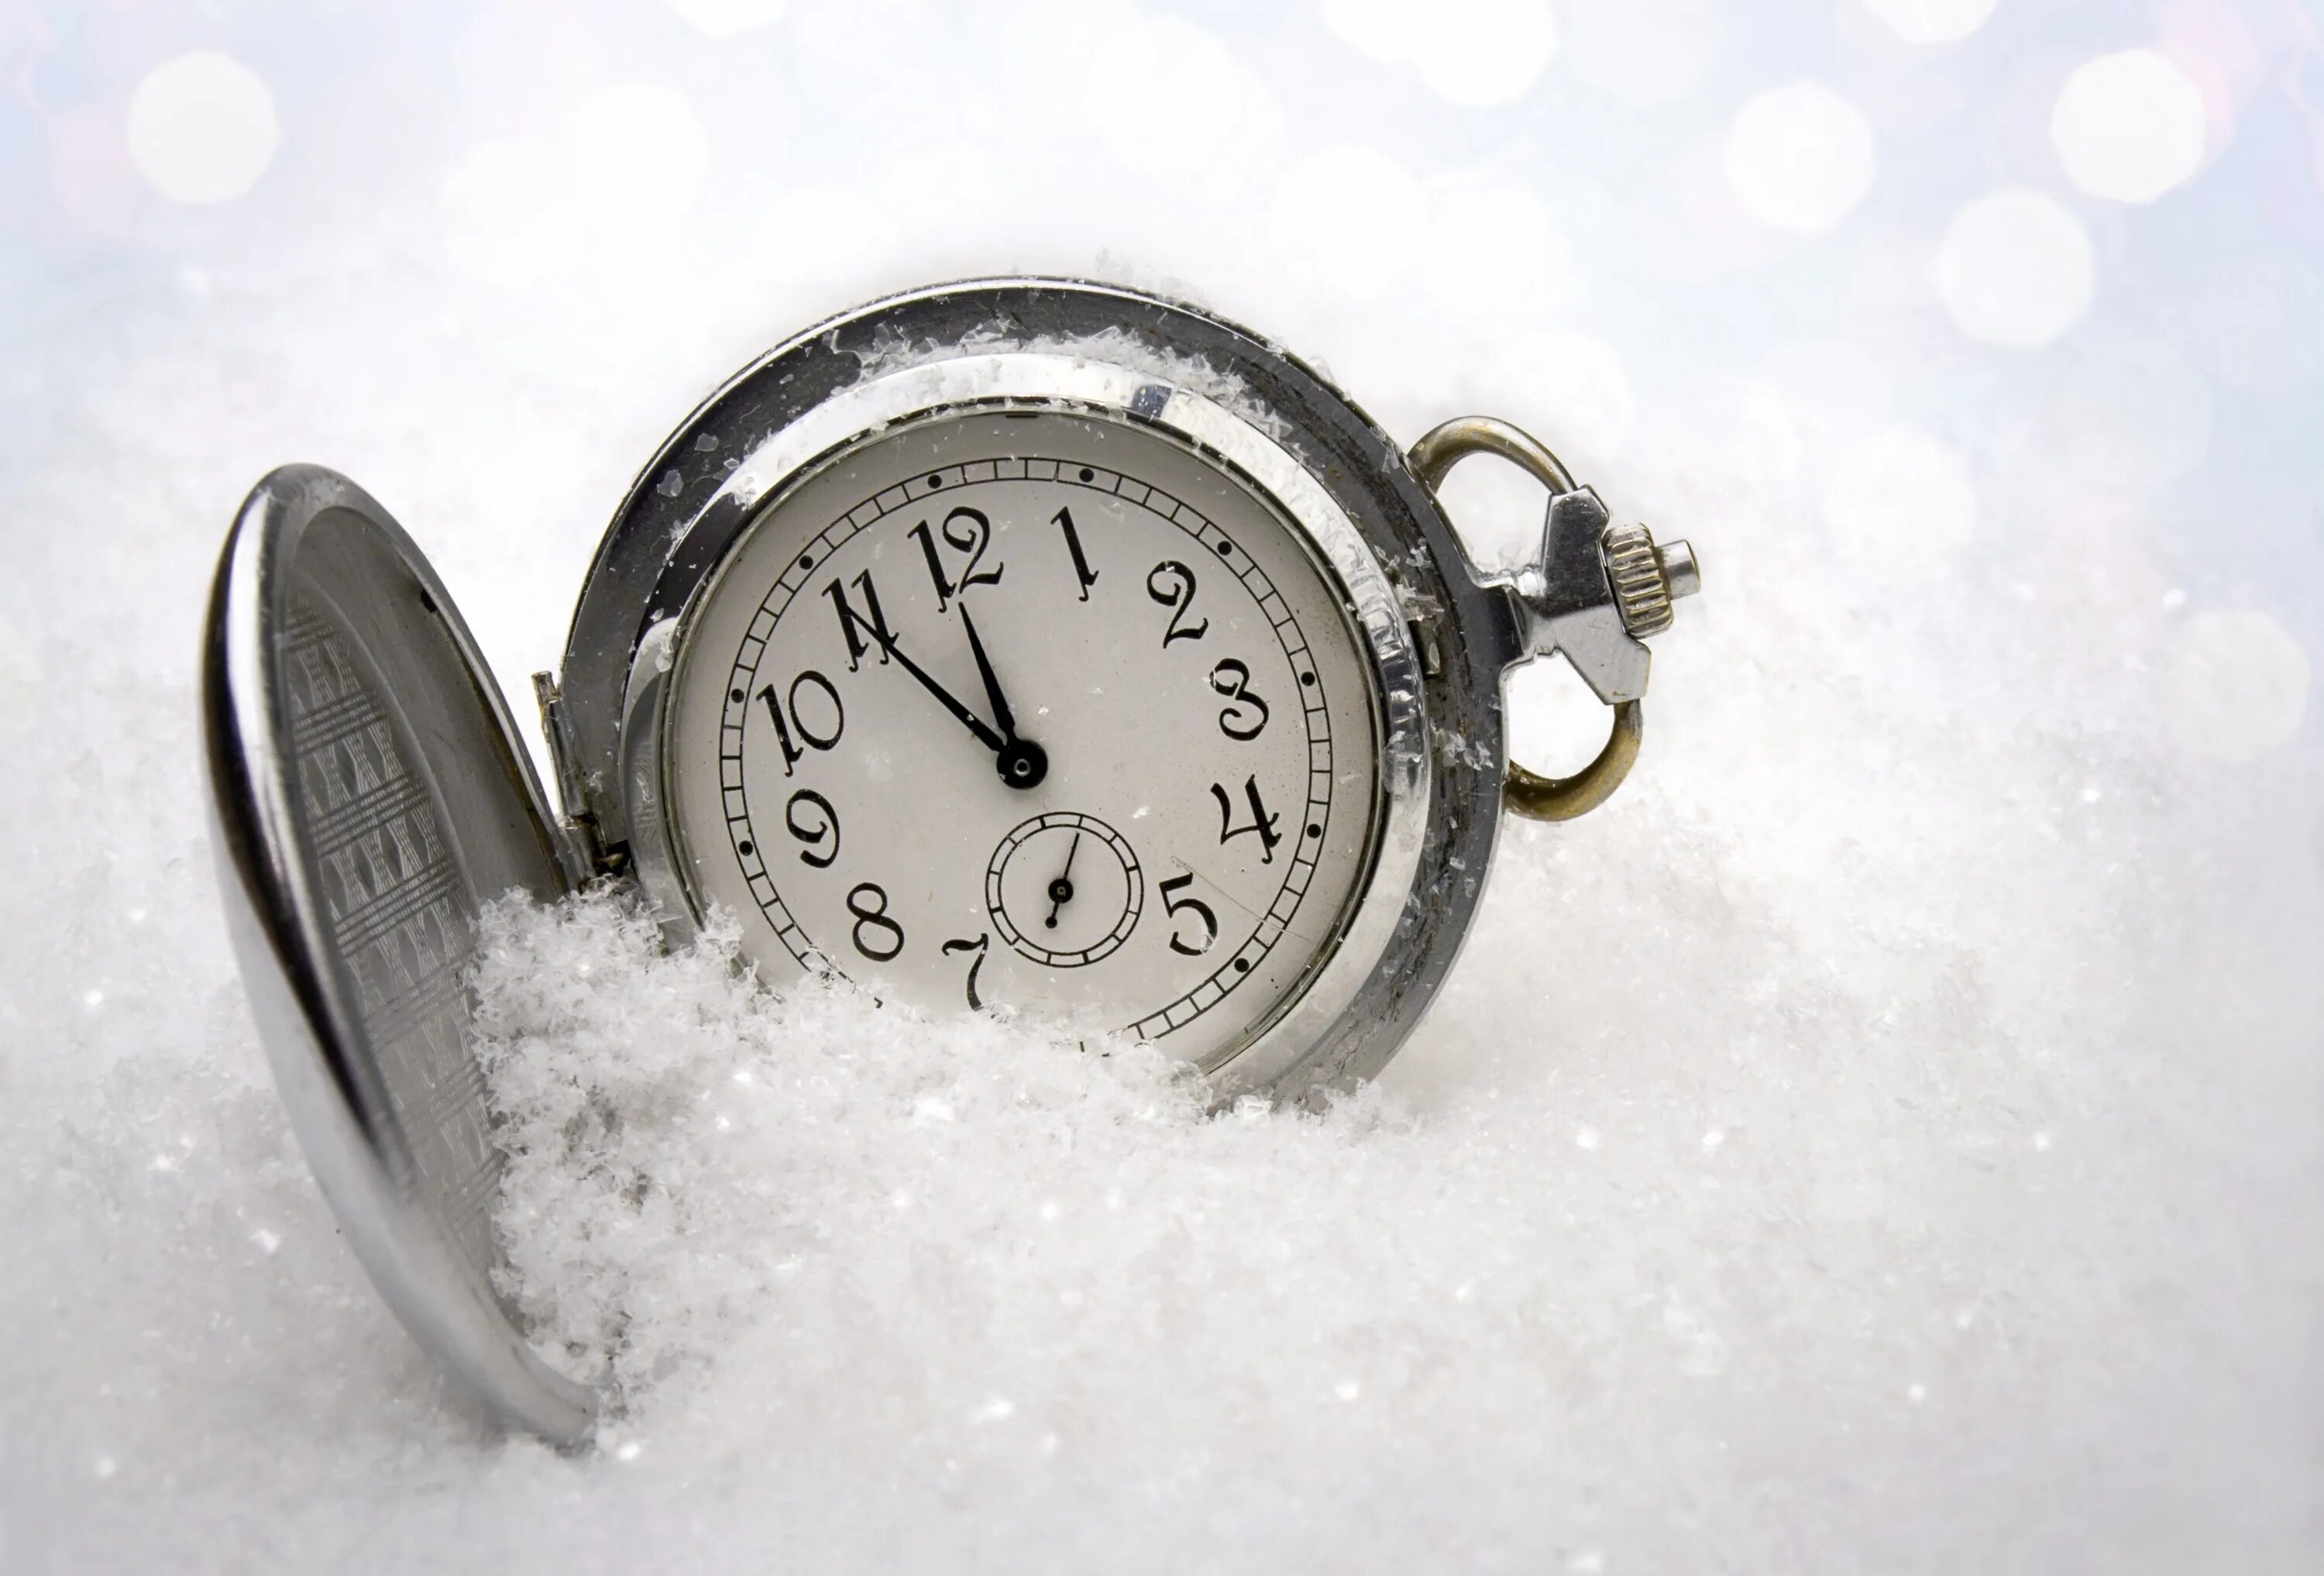 Зимние часы. Часы в снегу. Зимние часики. Новый год часы снег. 2015 года уходящий